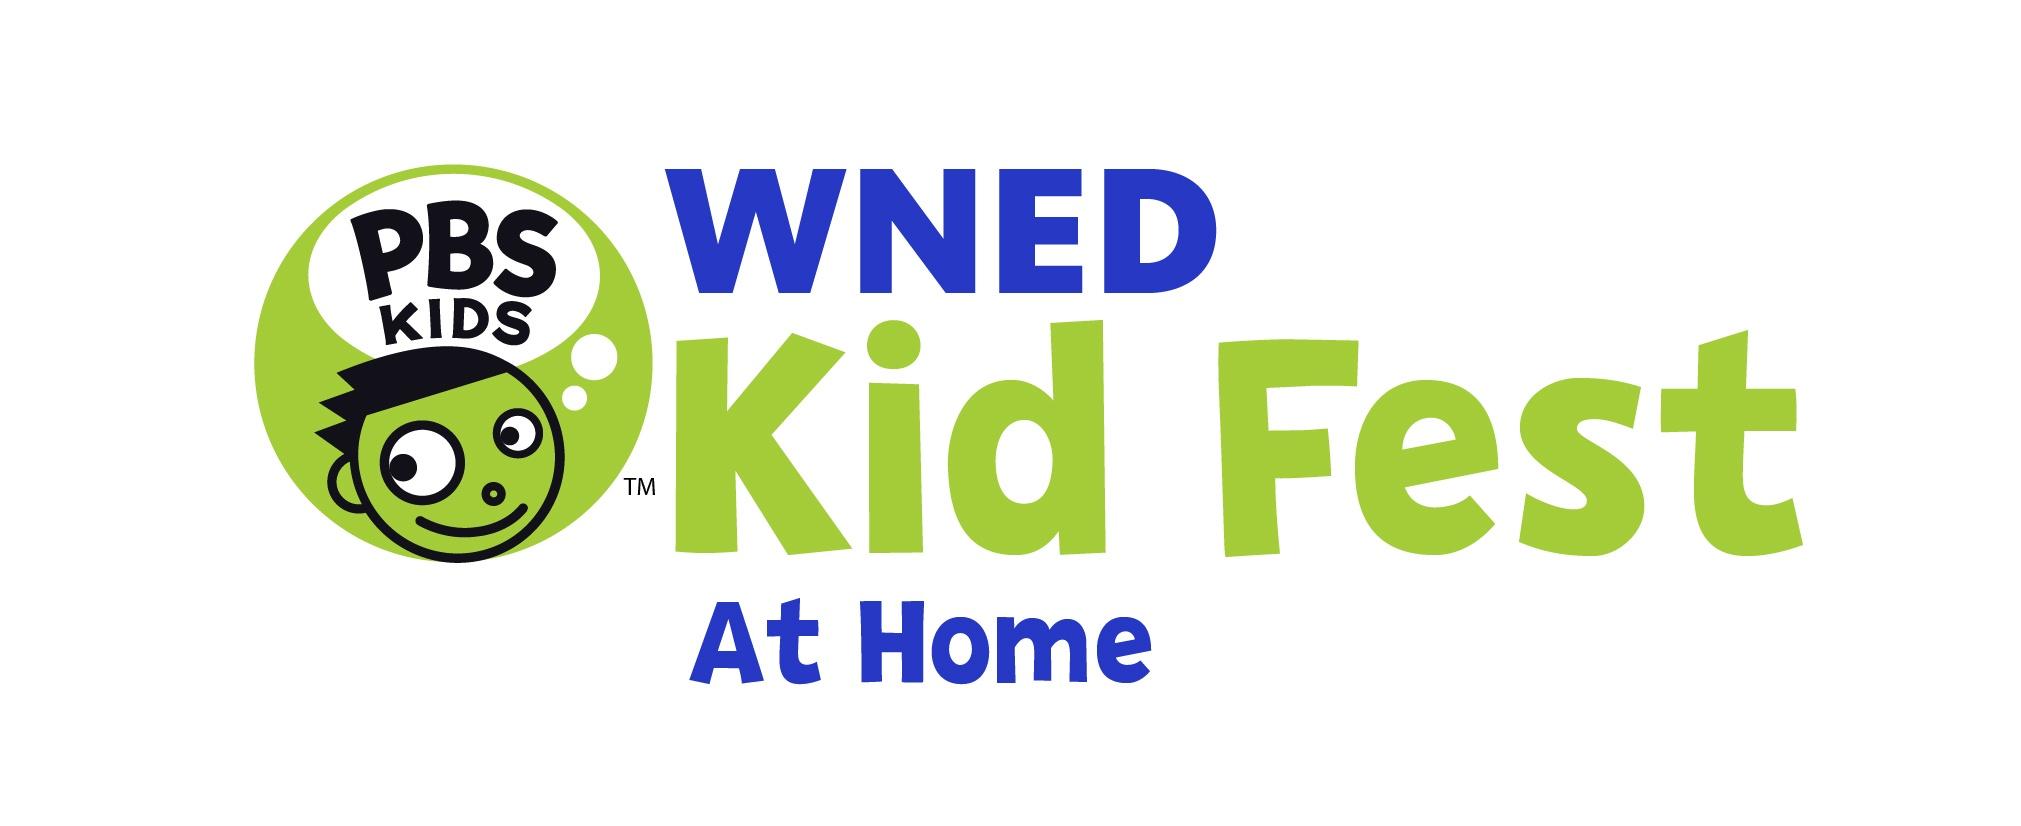 WNED-TV Kid Fest